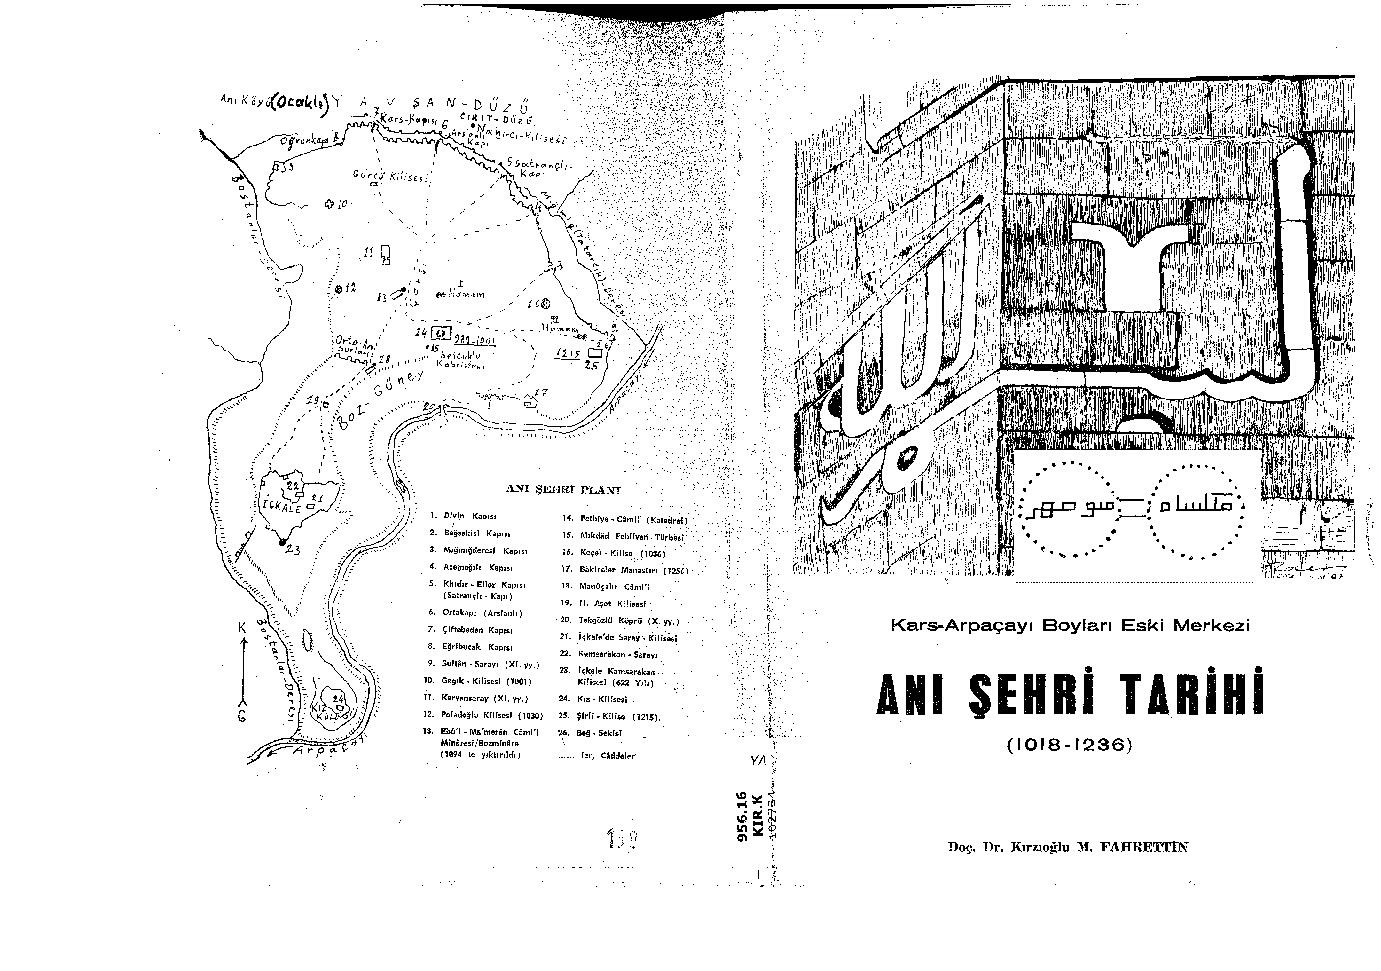 Anı Şehri Tarixi-1018-1236-Fexretdin Kirzioğlu-Qırqızoghlu M.Fexretdin-1982-132s